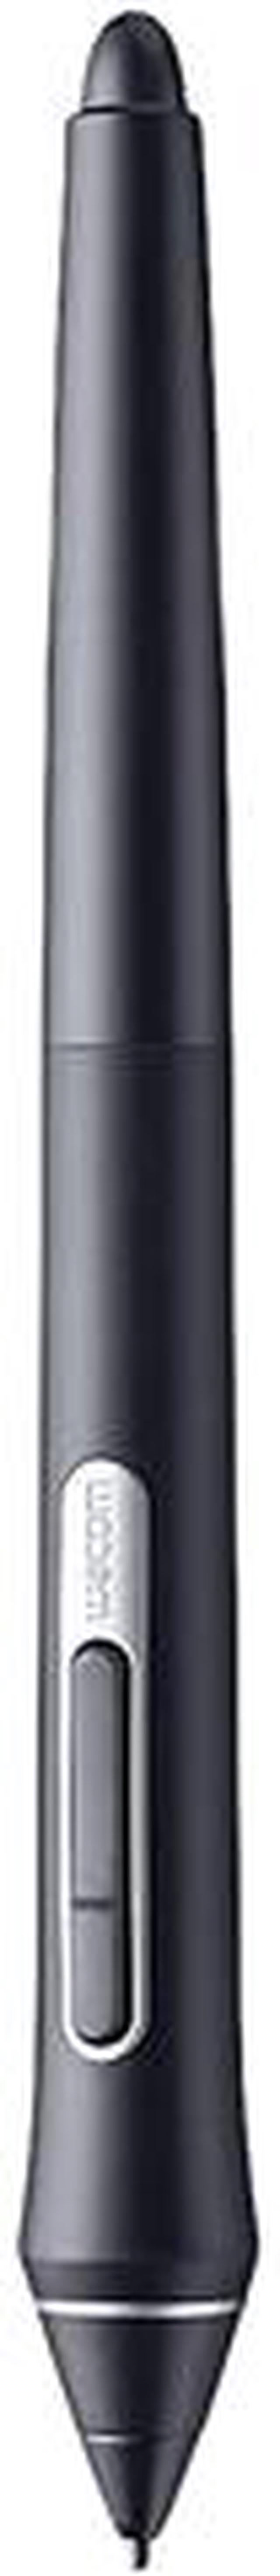 Wacom Pro Pen 2 with Case, Black (KP504E) - Newegg.com